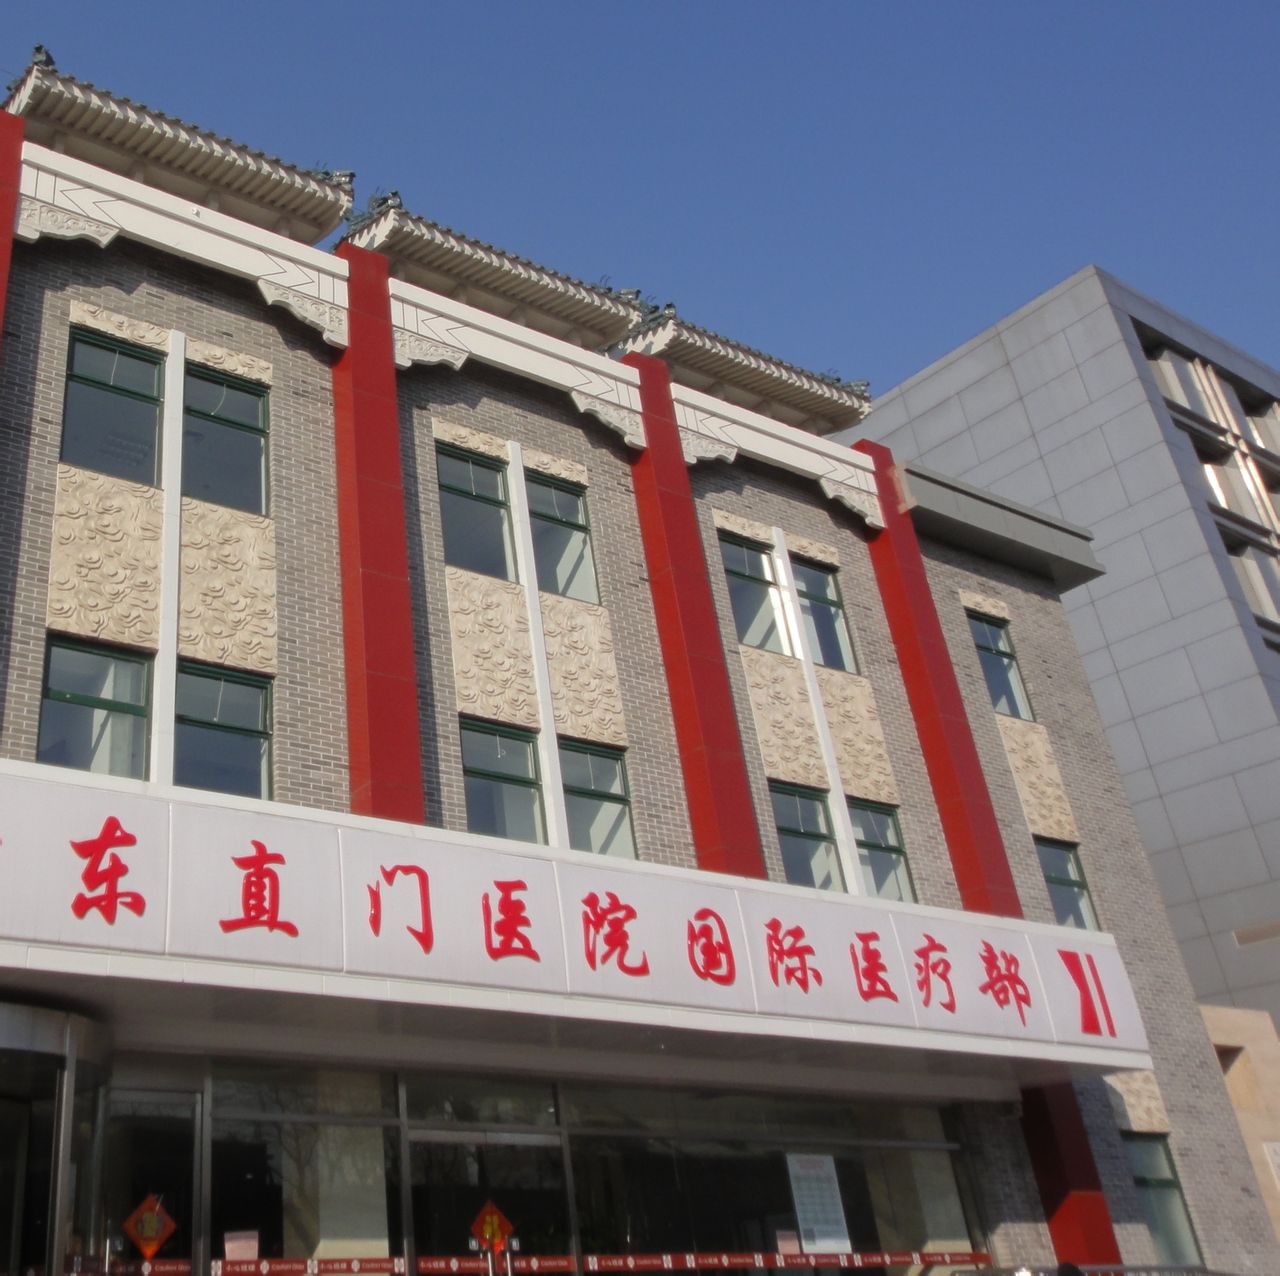 包含北京中西医结合医院一直在用的黄牛挂号，推荐大家收藏备用的词条